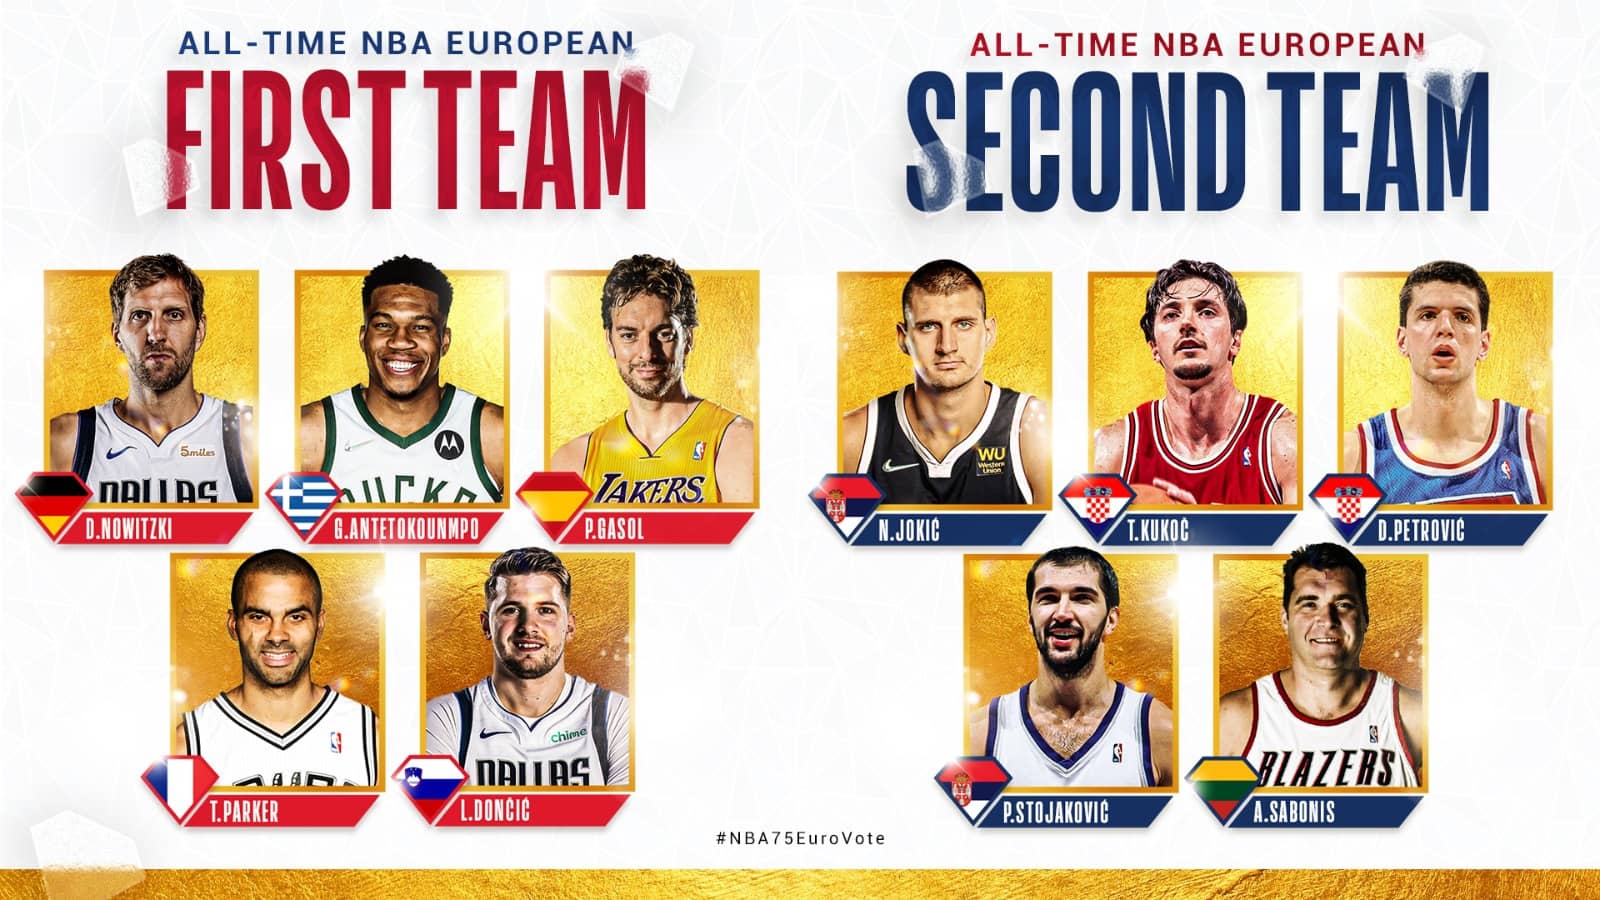 transferir compañero Práctico Antetokounmpo, Doncic, Gasol, Nowitzki y Parker en el mejor quinteto  europeo de la historia de la NBA | NBA ID